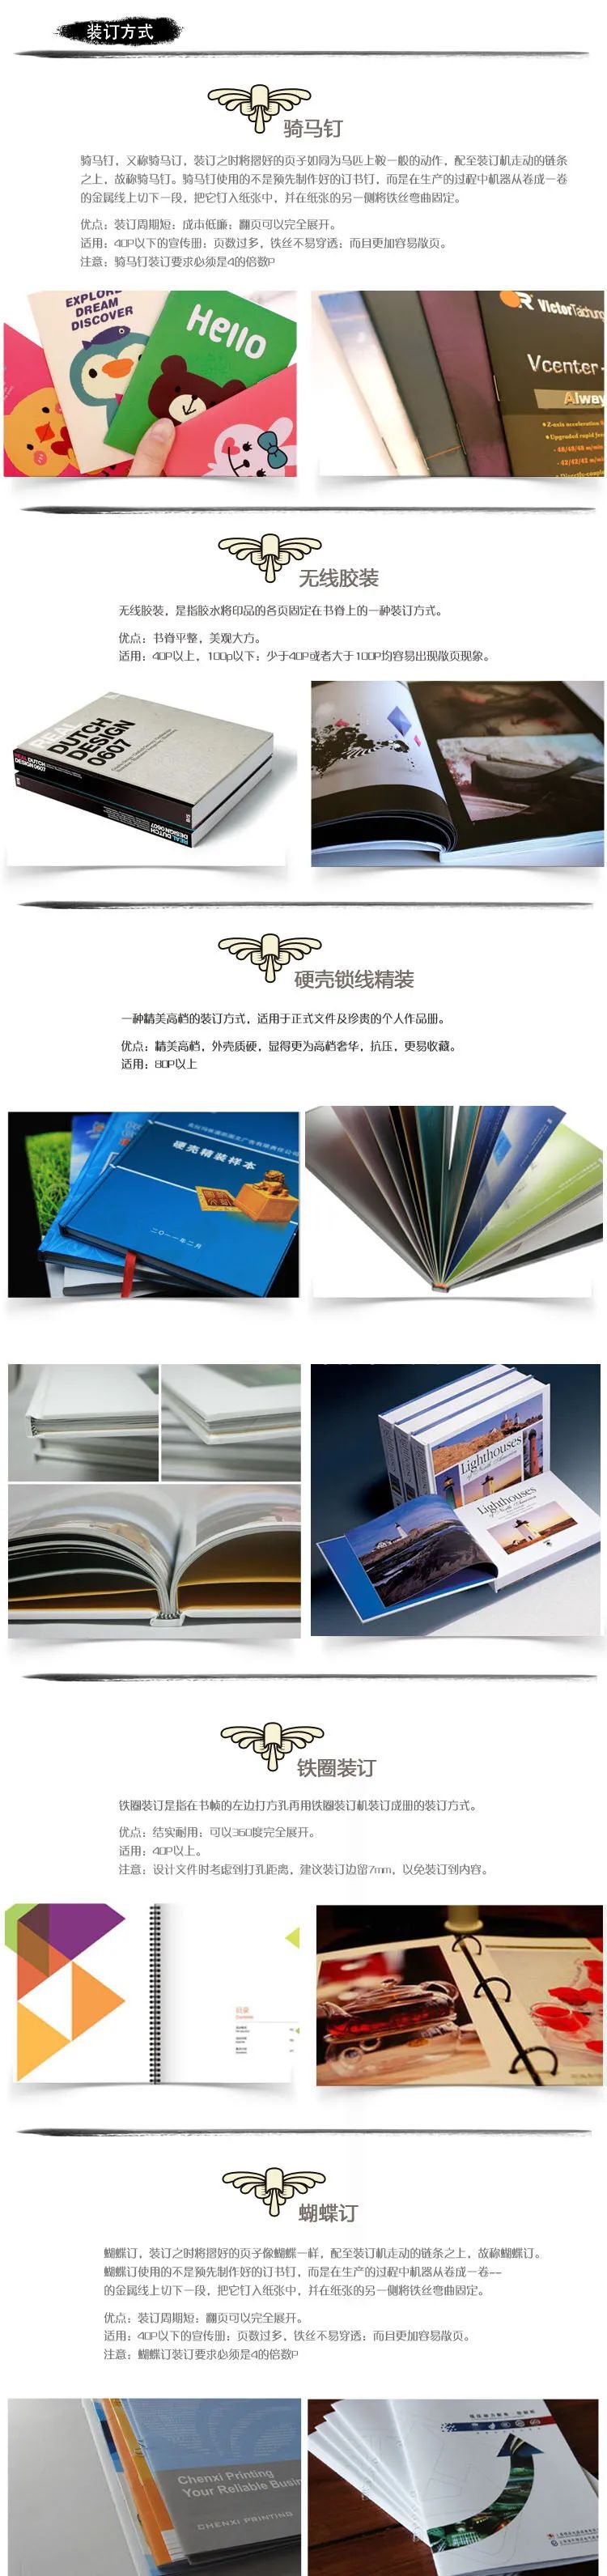 合肥画册印刷印刷首选公司_画册印刷_印刷画册图片